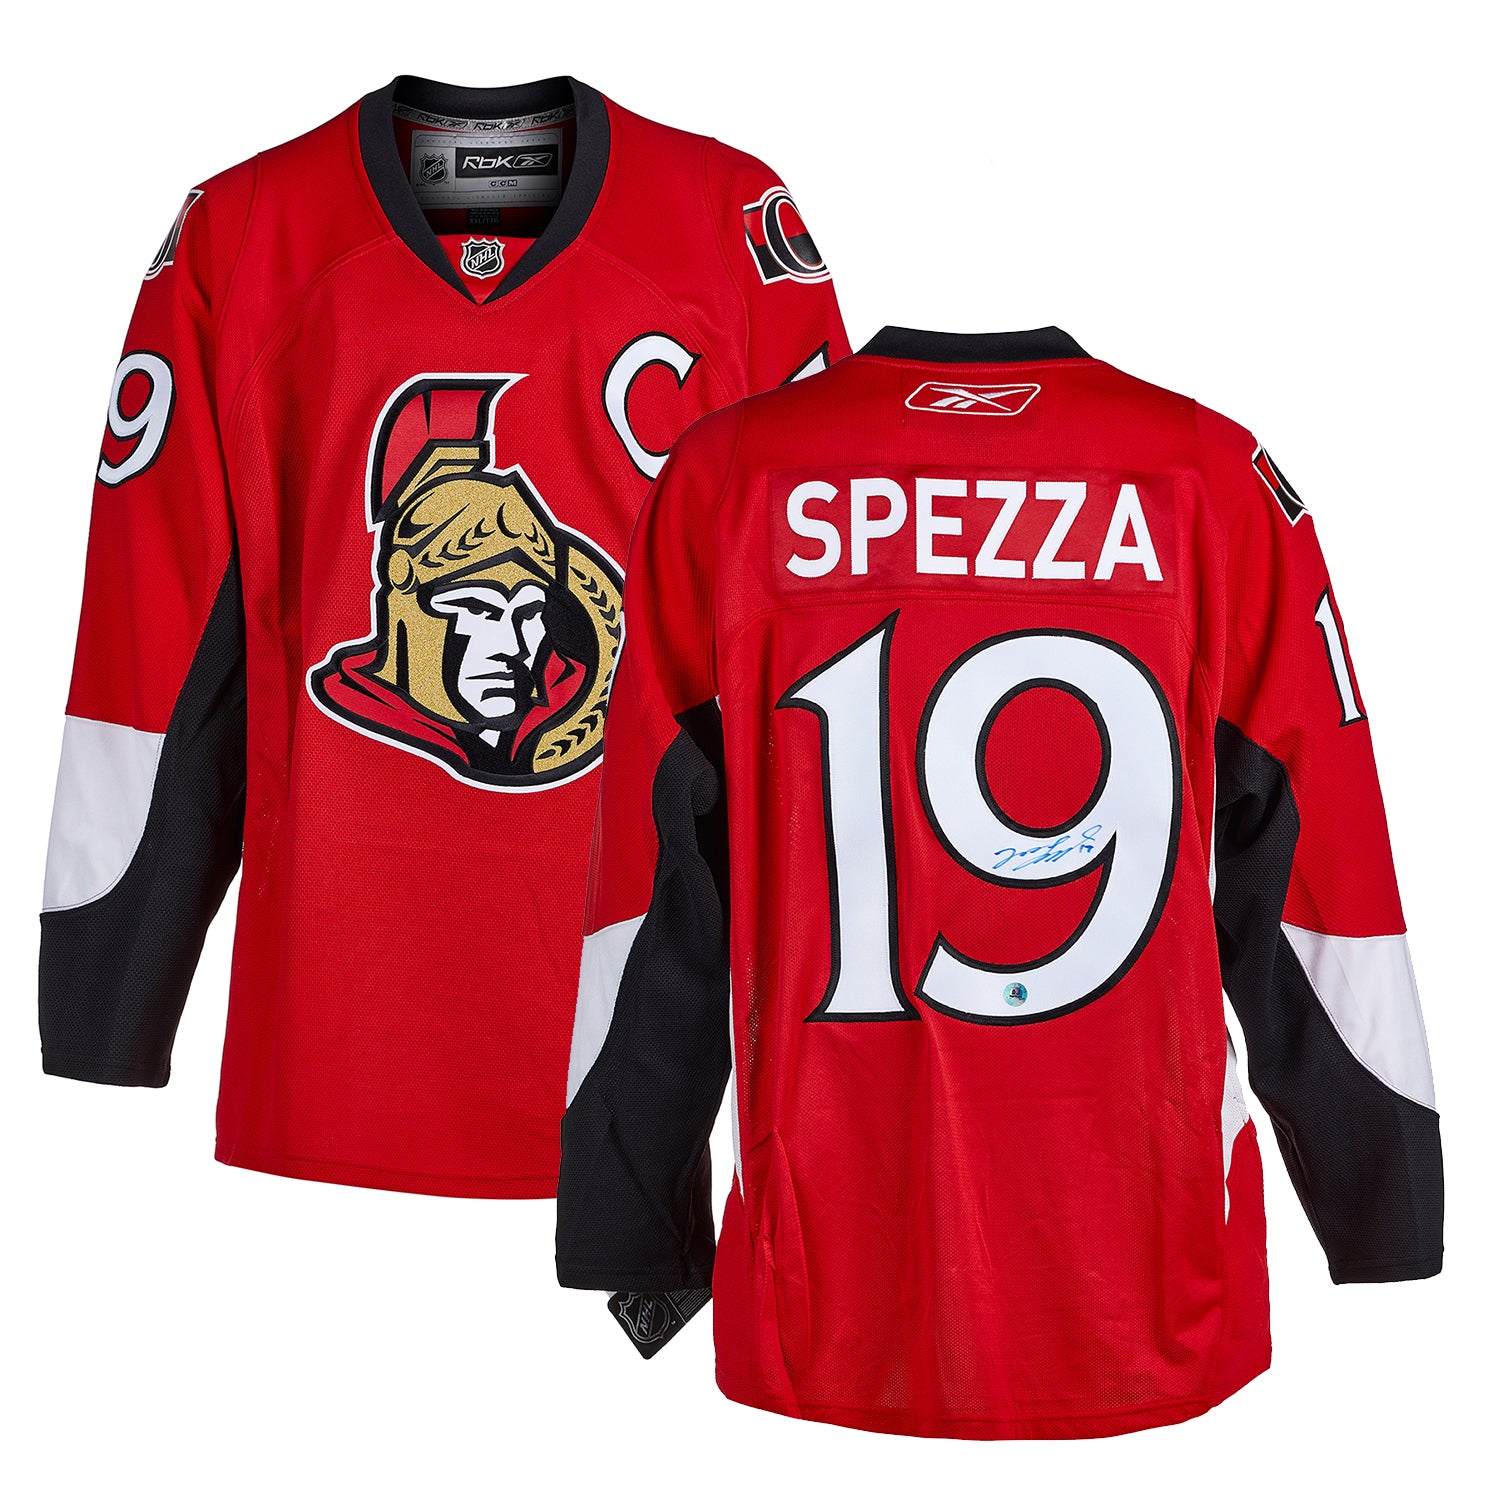 Jason Spezza Ottawa Senators Autographed Reebok Jersey